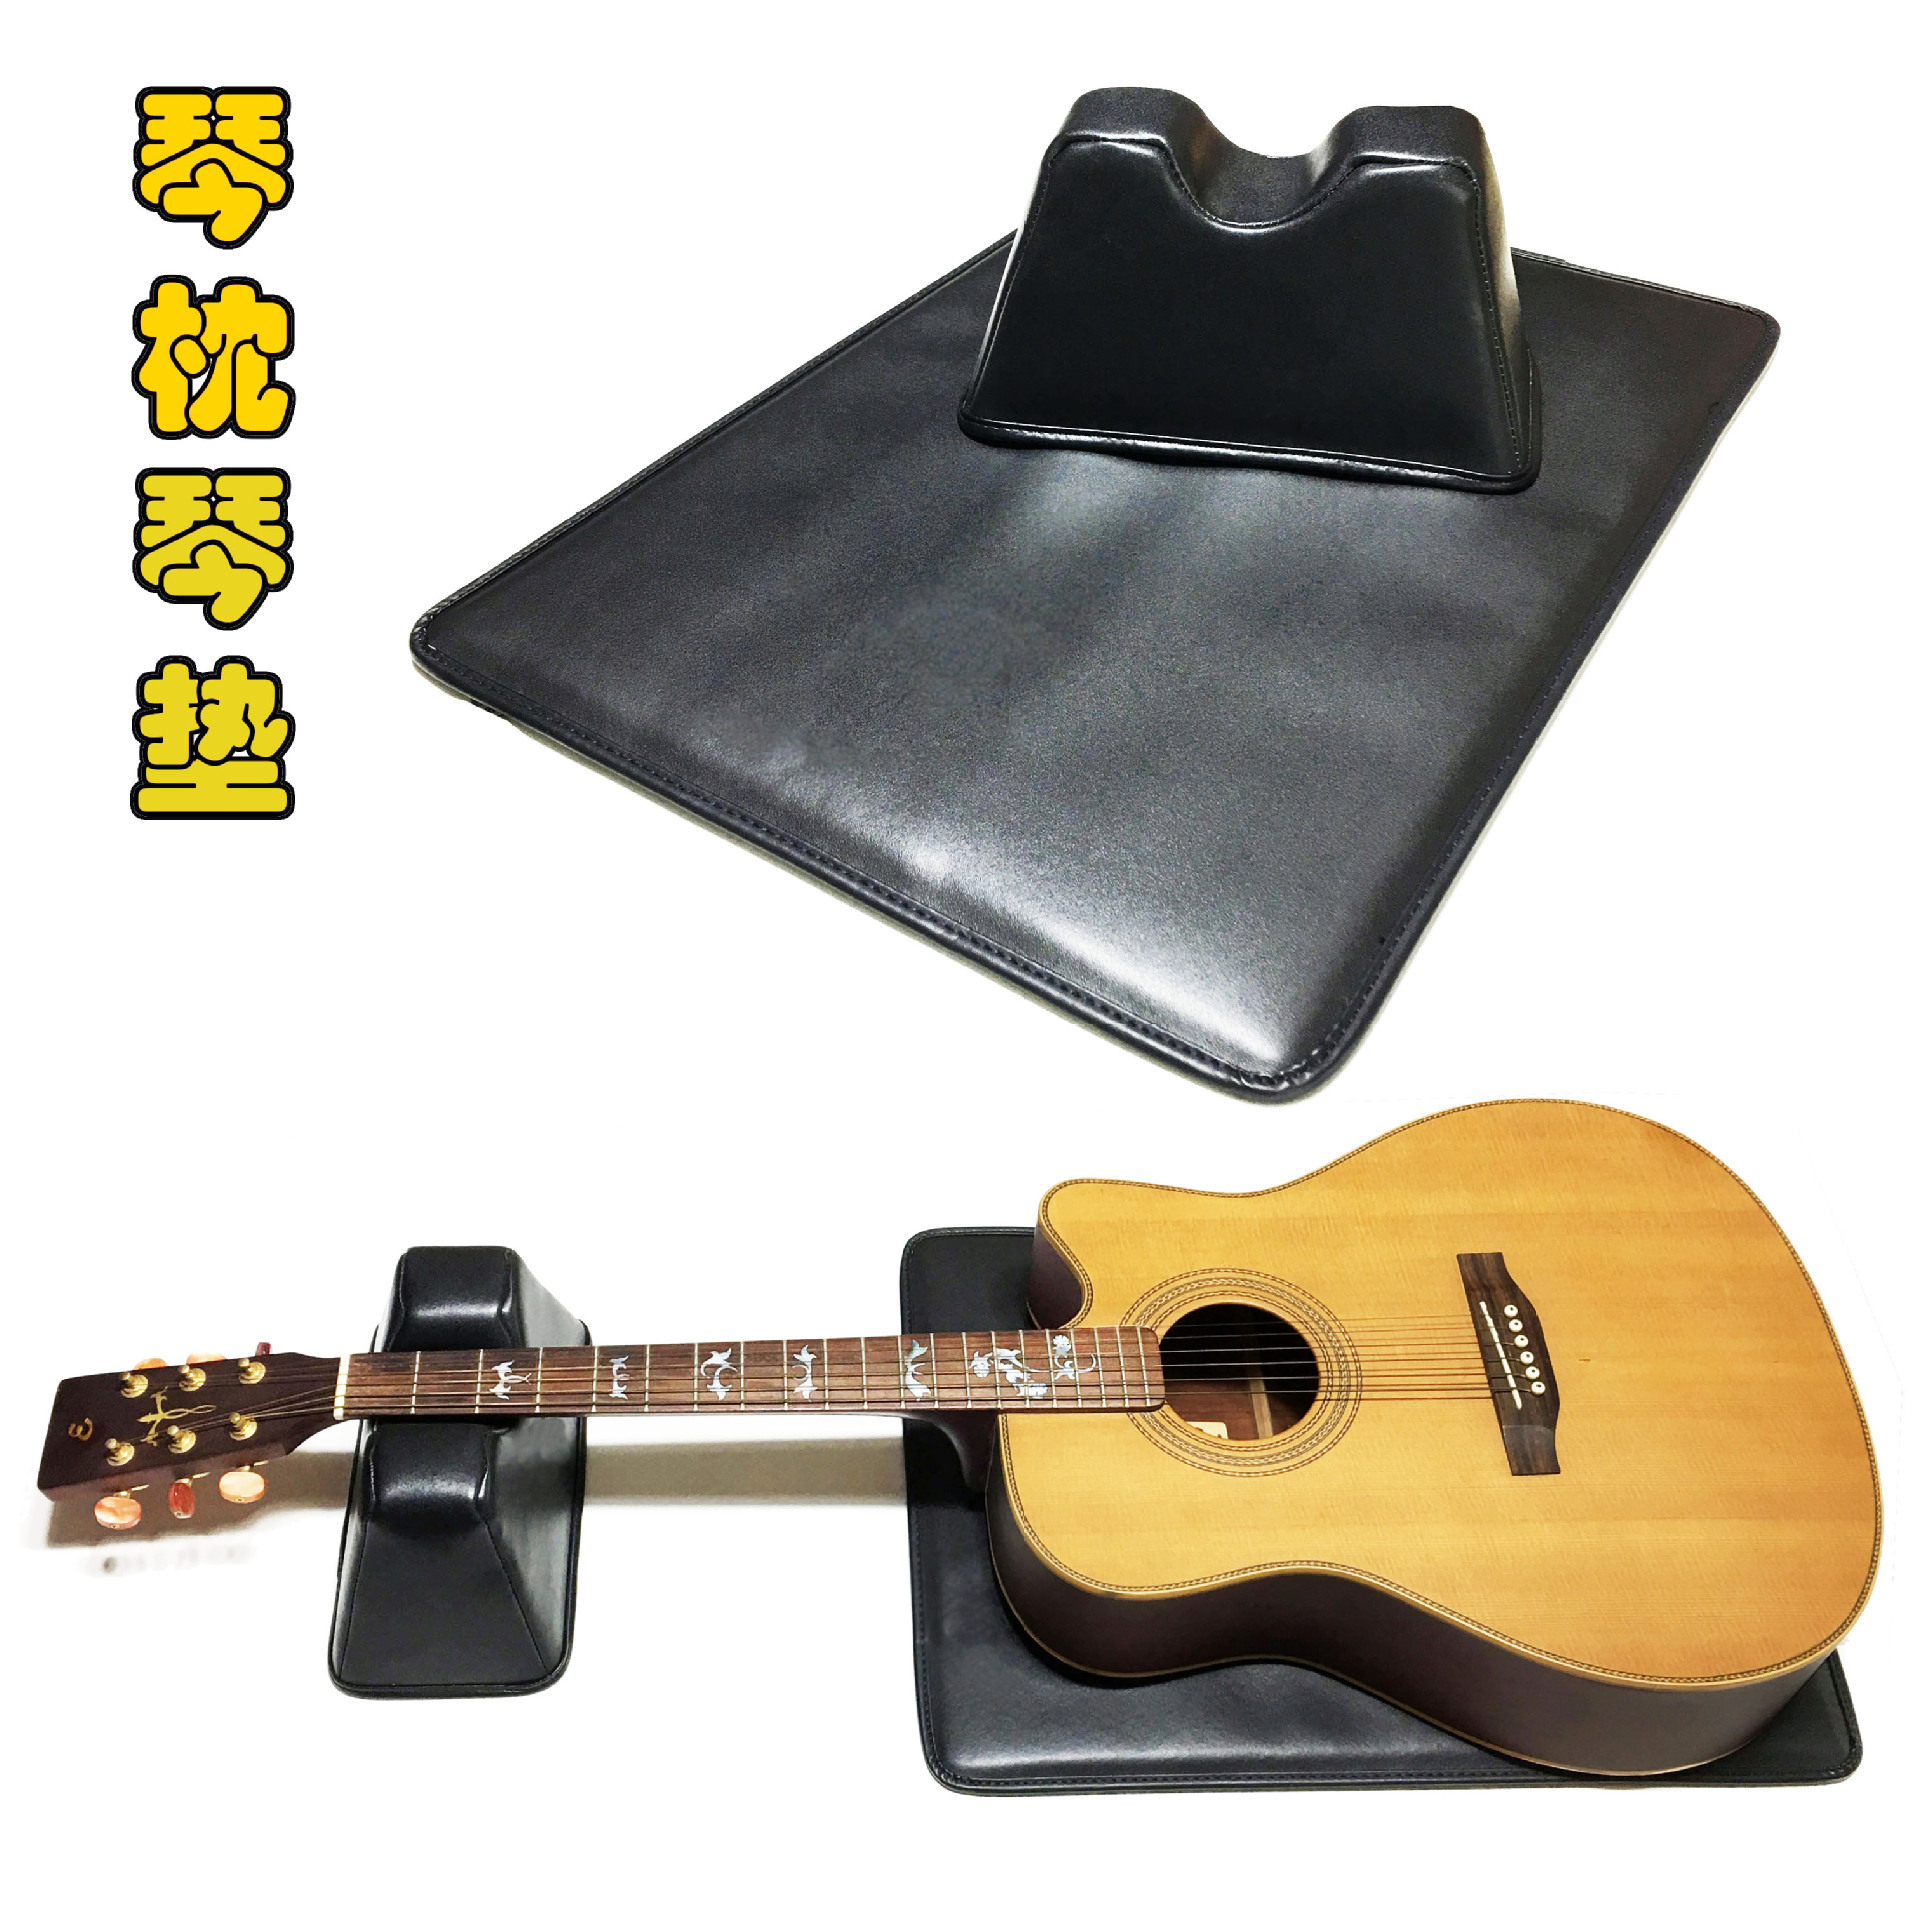 吉他琴头琴颈托架乐器护理保养维修工作保护垫琴颈托架吉他工作垫